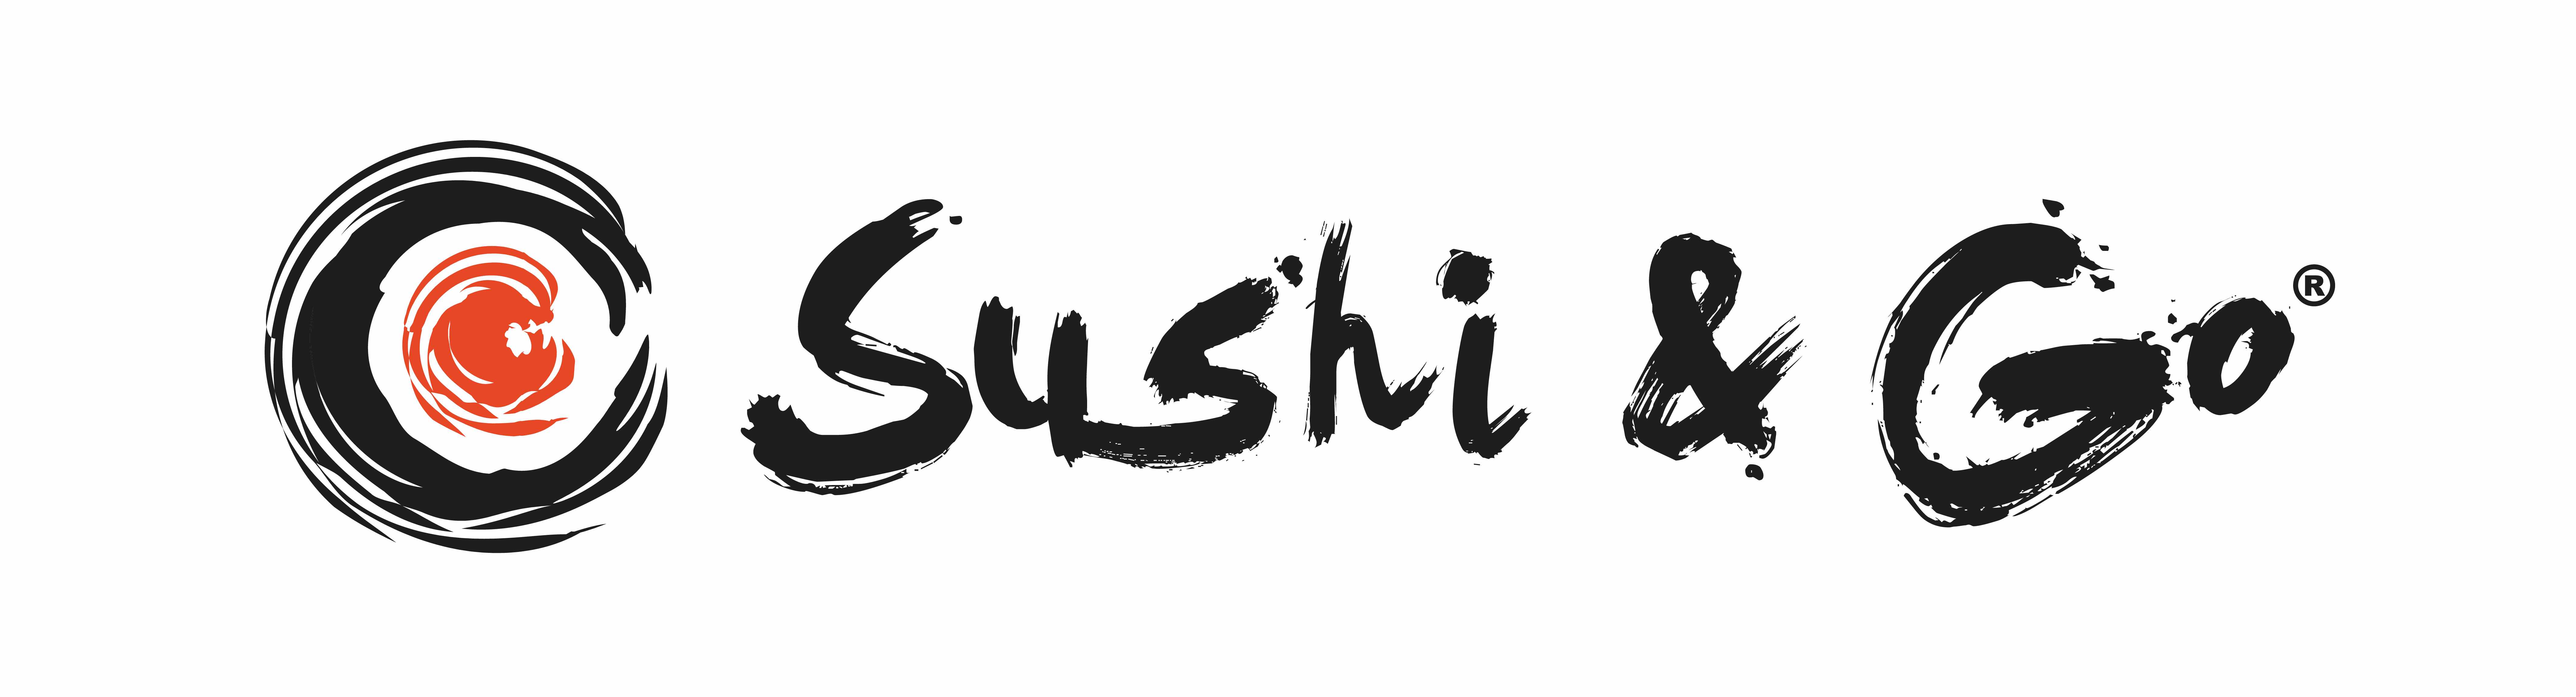 Sushi & Go